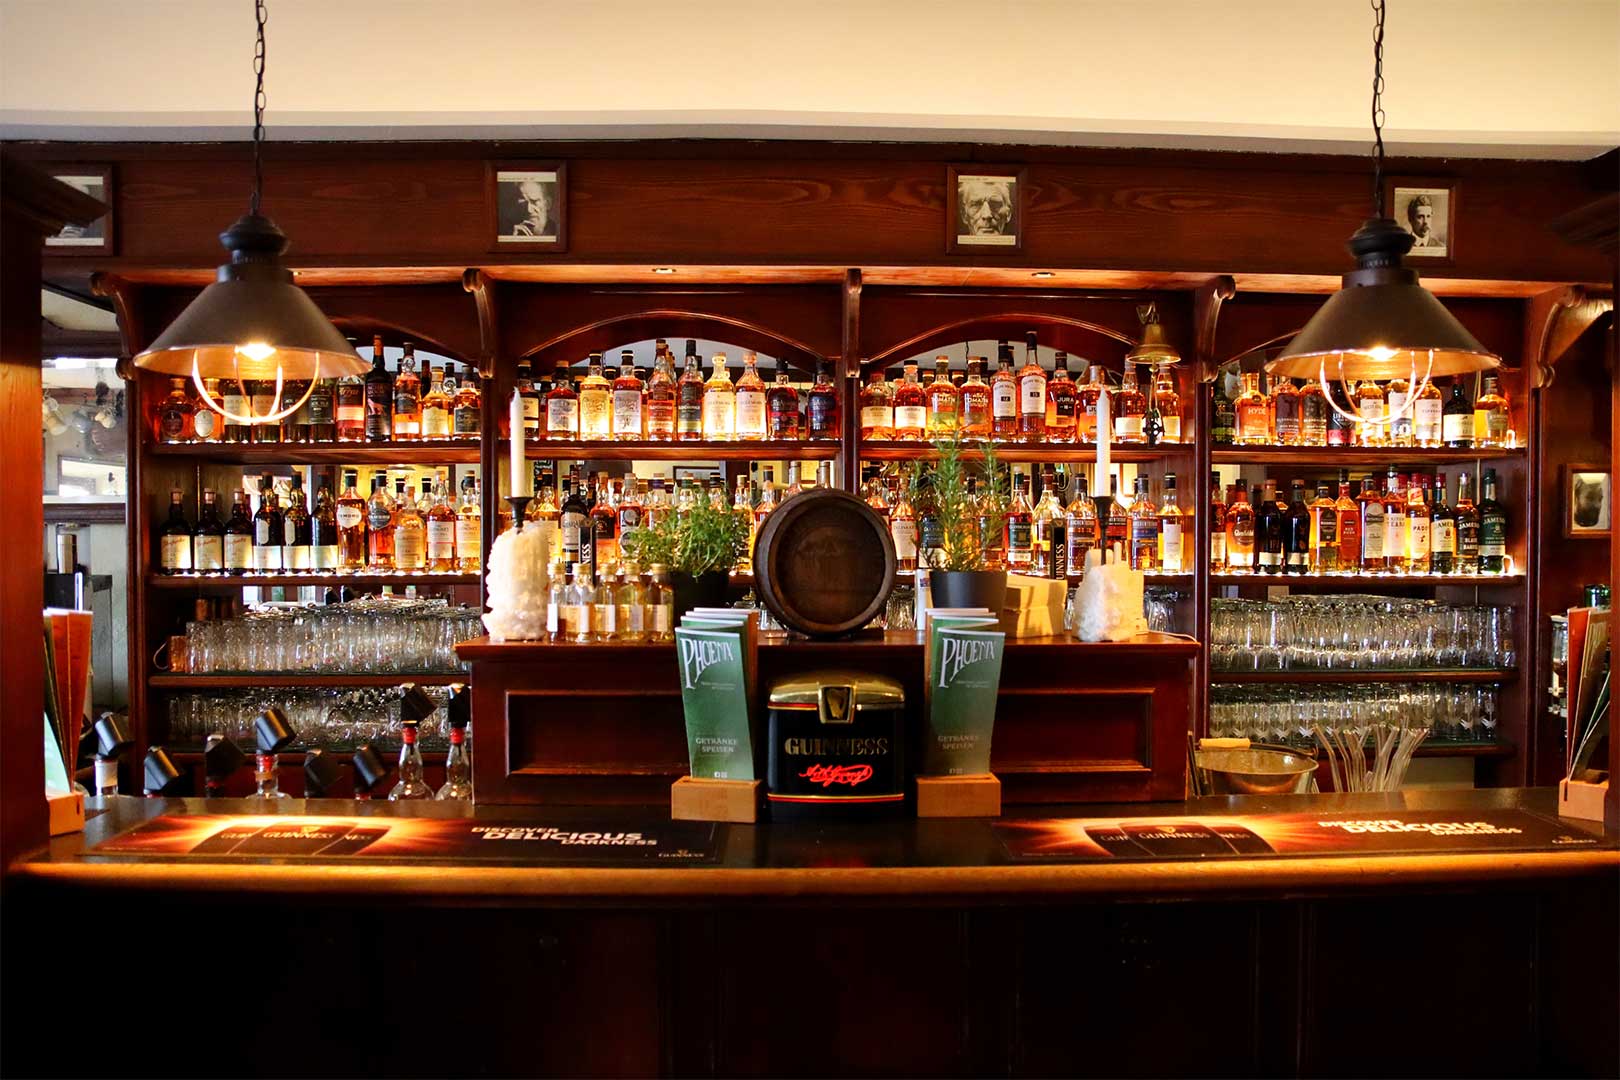 whisky bar phoenix irish pub lauffen am neckar WEB 3 2 1620x1080 rkmpspkd